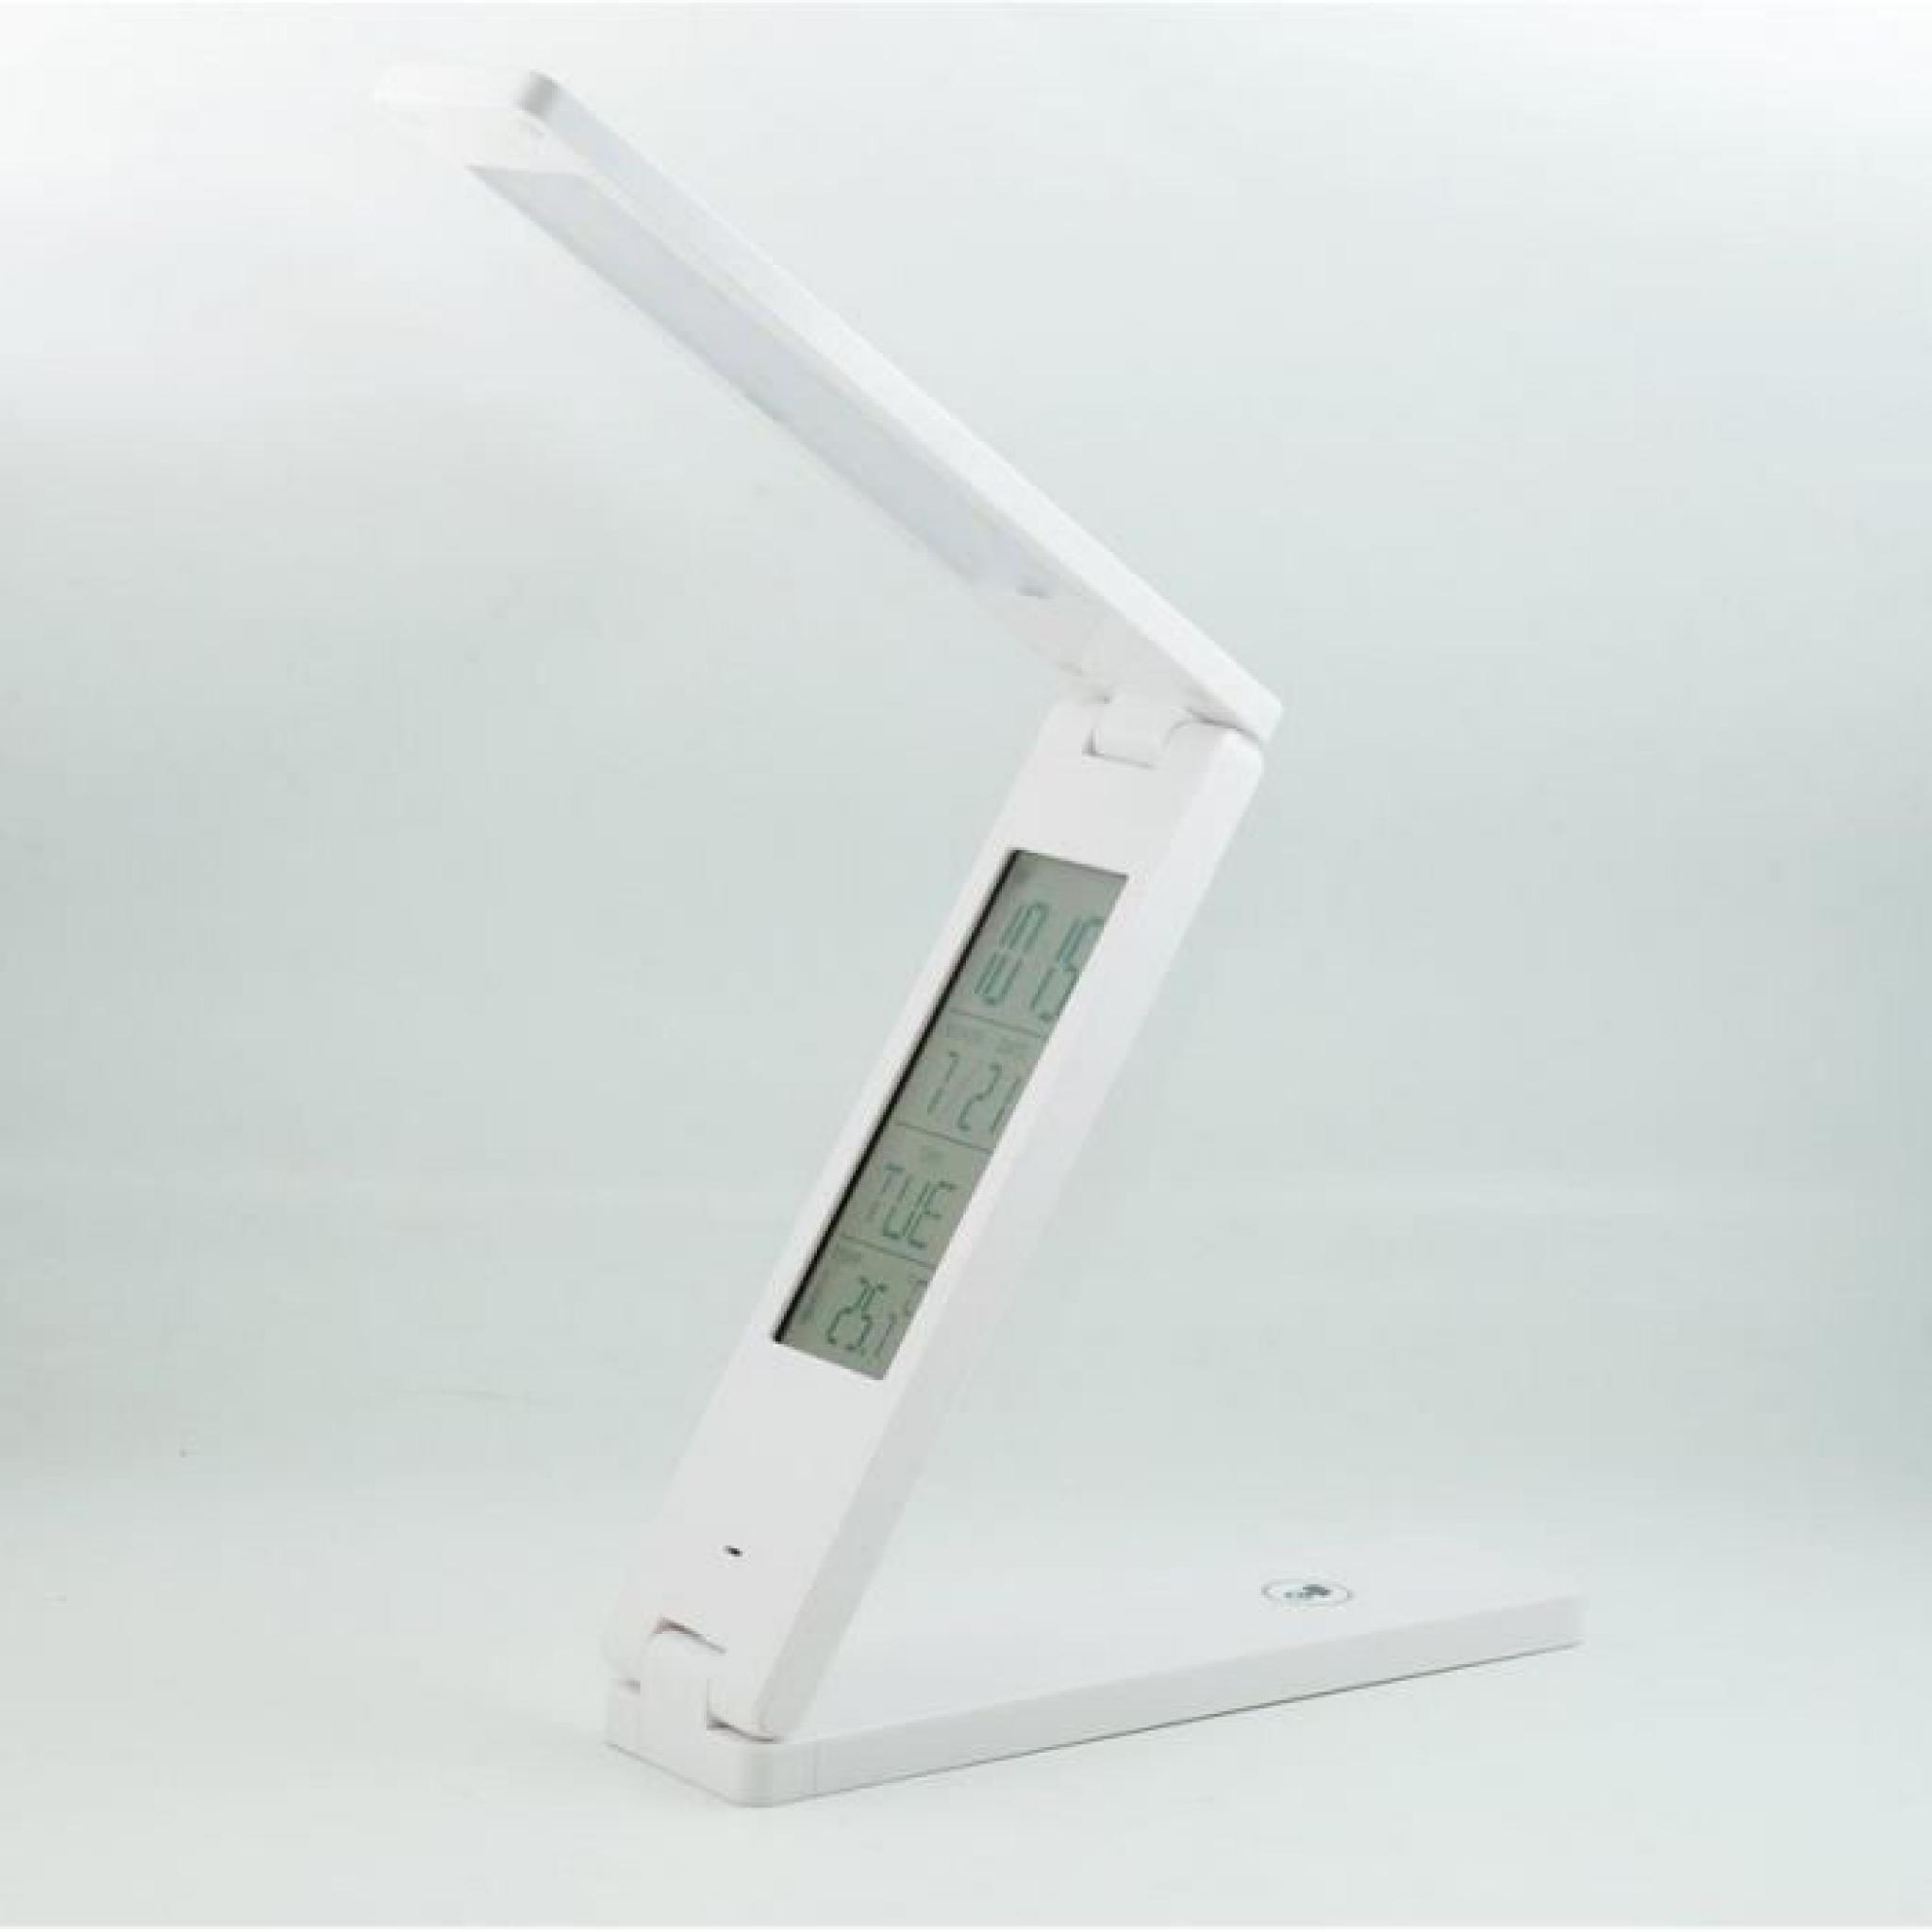 QUMOX Lampe LED lampe de table , lampe de lecture numérique horloge thermomètre réveil calendrier